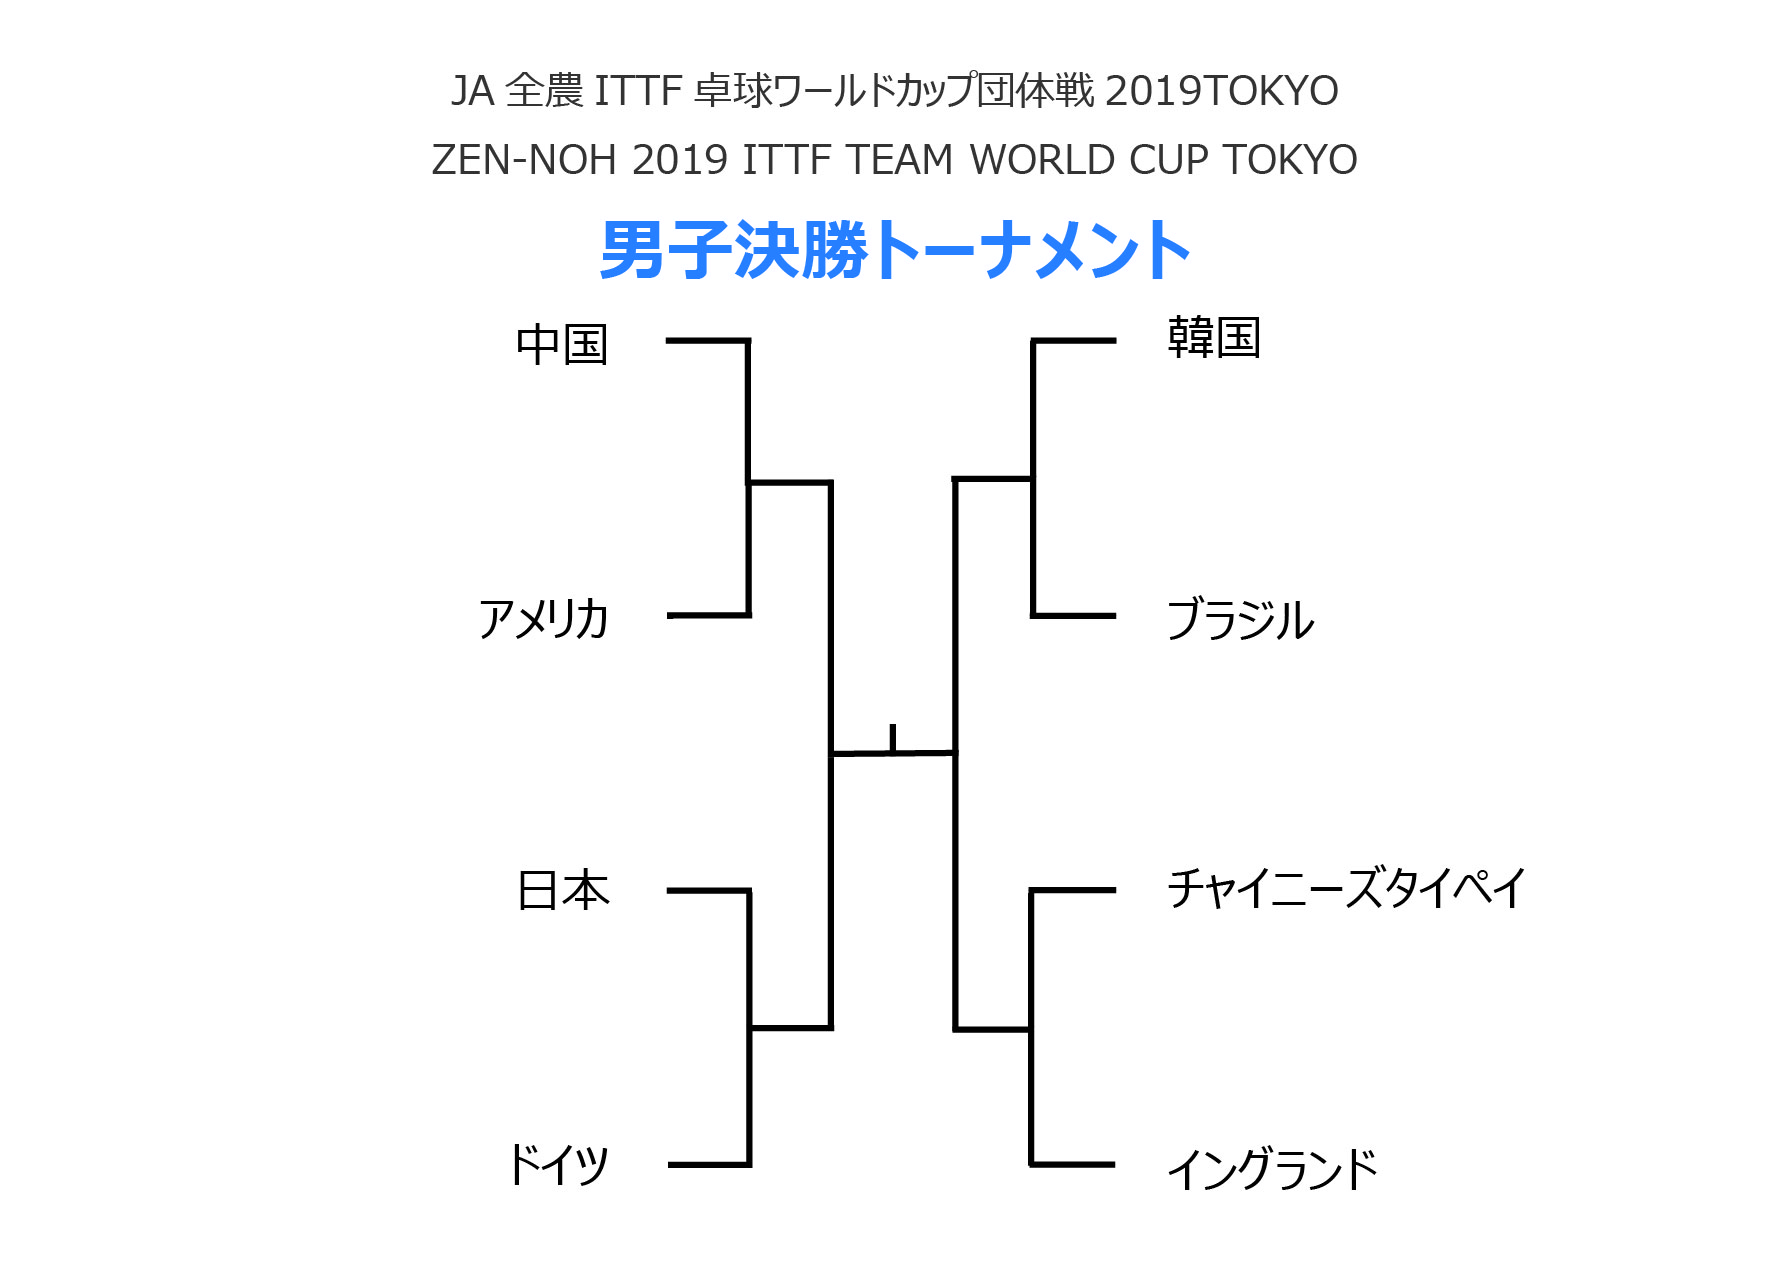 男子準々決勝の組み合わせが決定 日本はドイツと対戦 Nittaku ニッタク 日本卓球 卓球用品の総合用具メーカーnittaku ニッタク 日本卓球株式会社の公式ホームページ